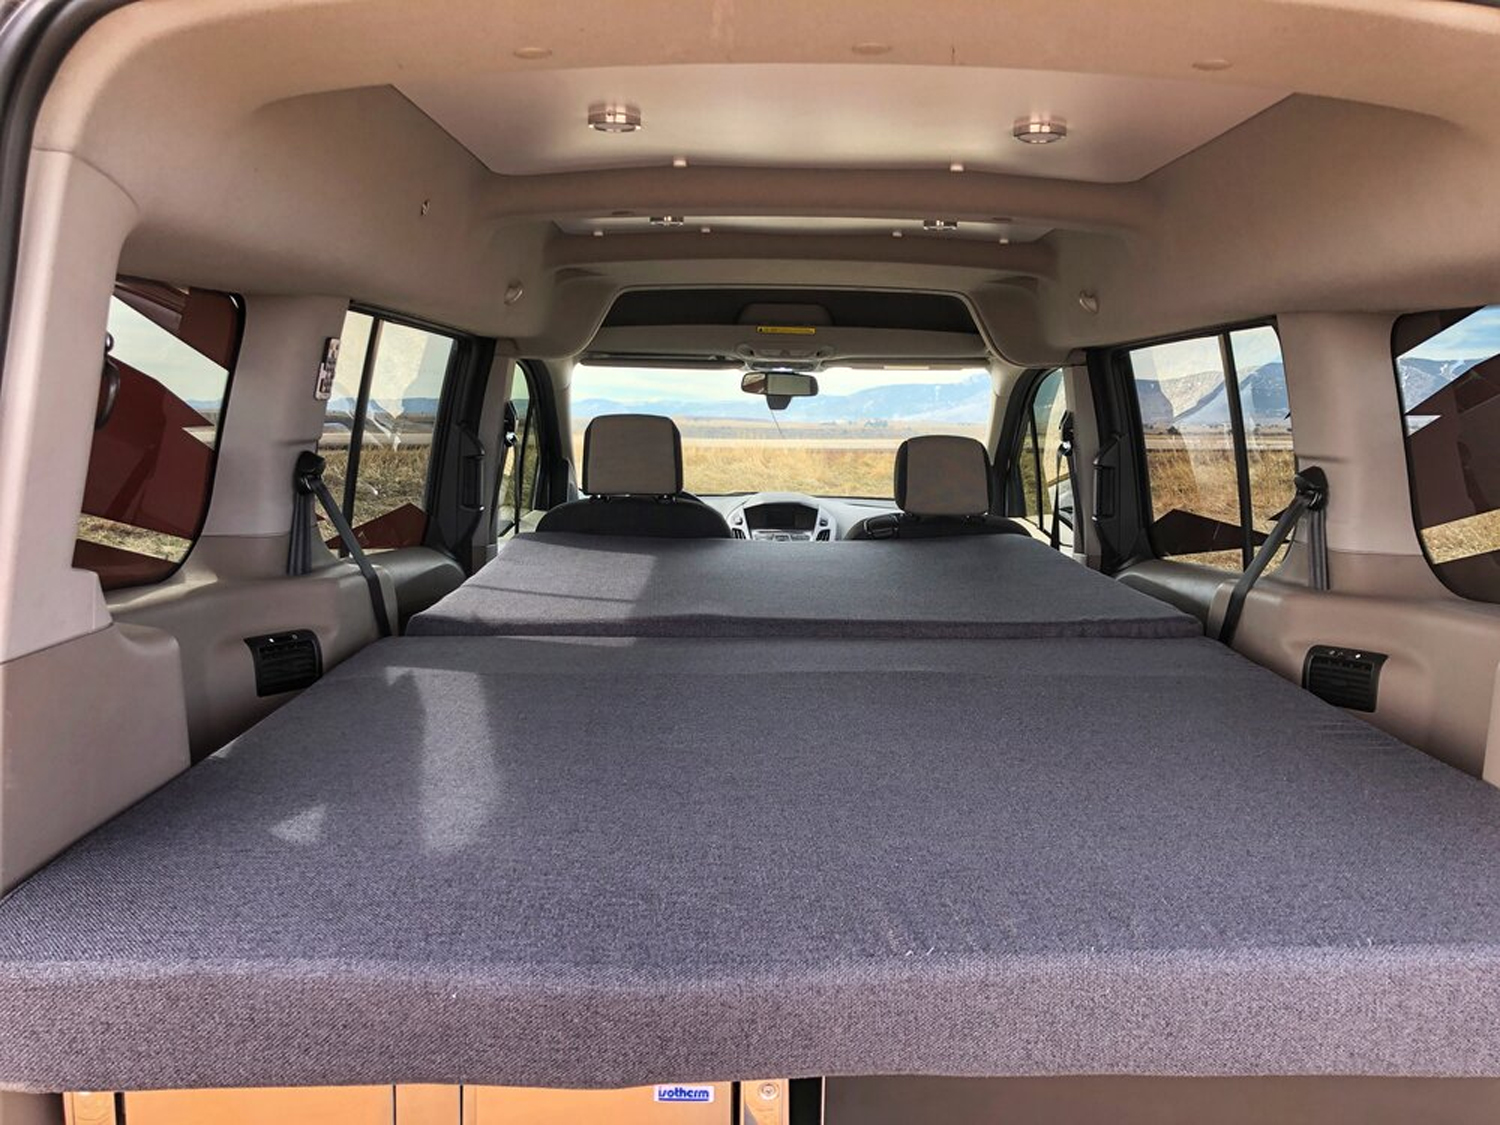 Ford Transit Connect Camper Van Conversion - Contravans